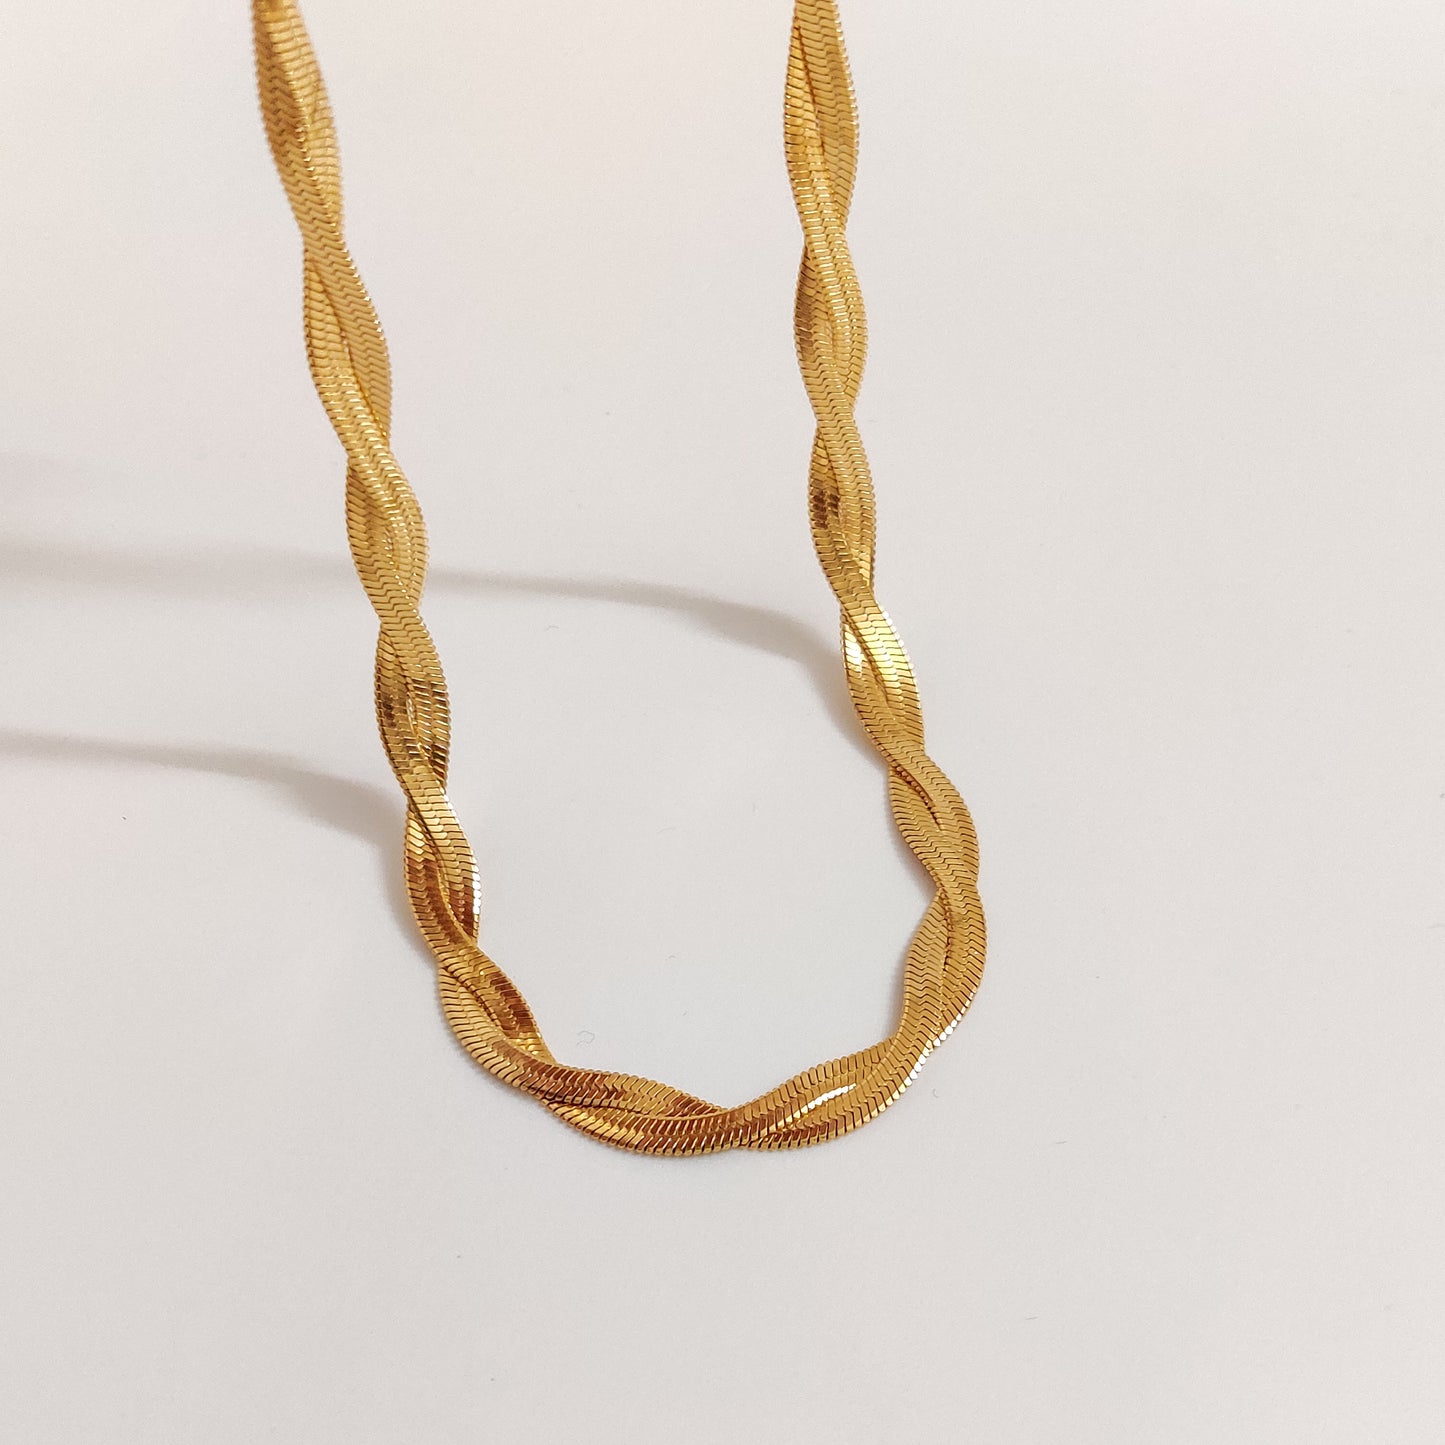 Dual Serpentine Chain